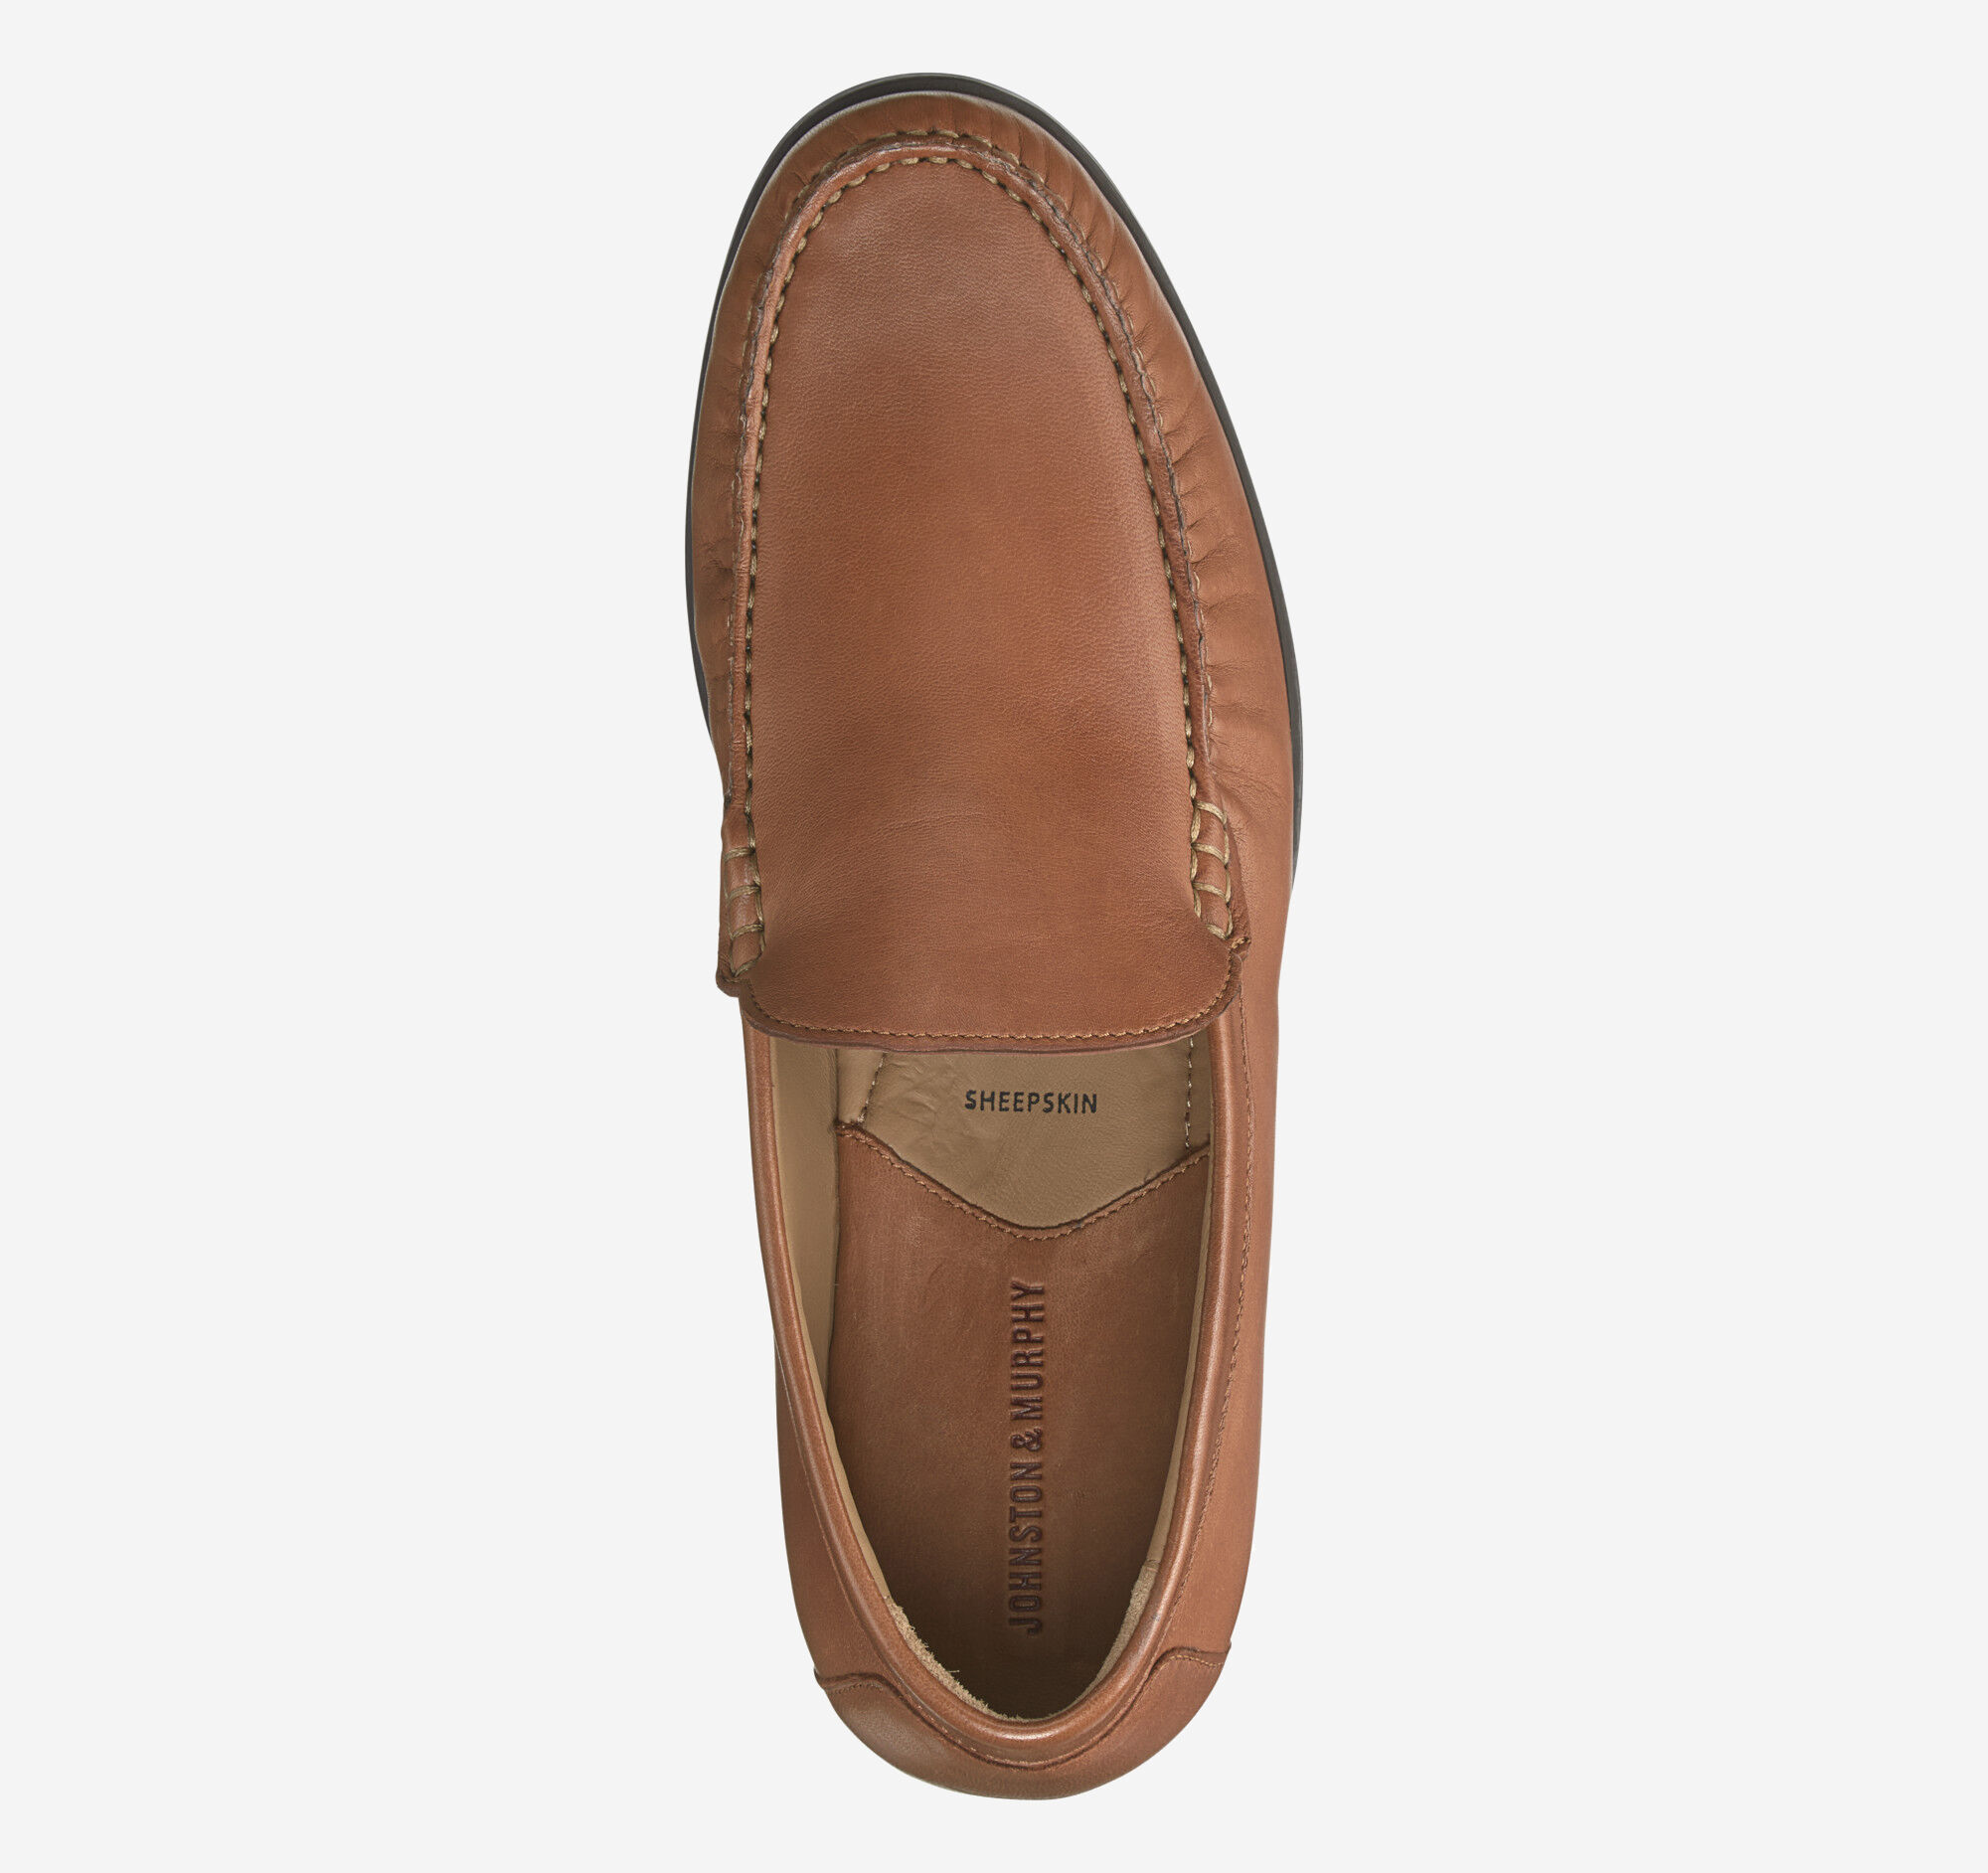 Schoenen Herenschoenen Loafers & Instappers Johnston & Murphy Mens Sheepskin Cresswell Venetian Slip On/Loafer Shoes Sz 8 1/2 M 